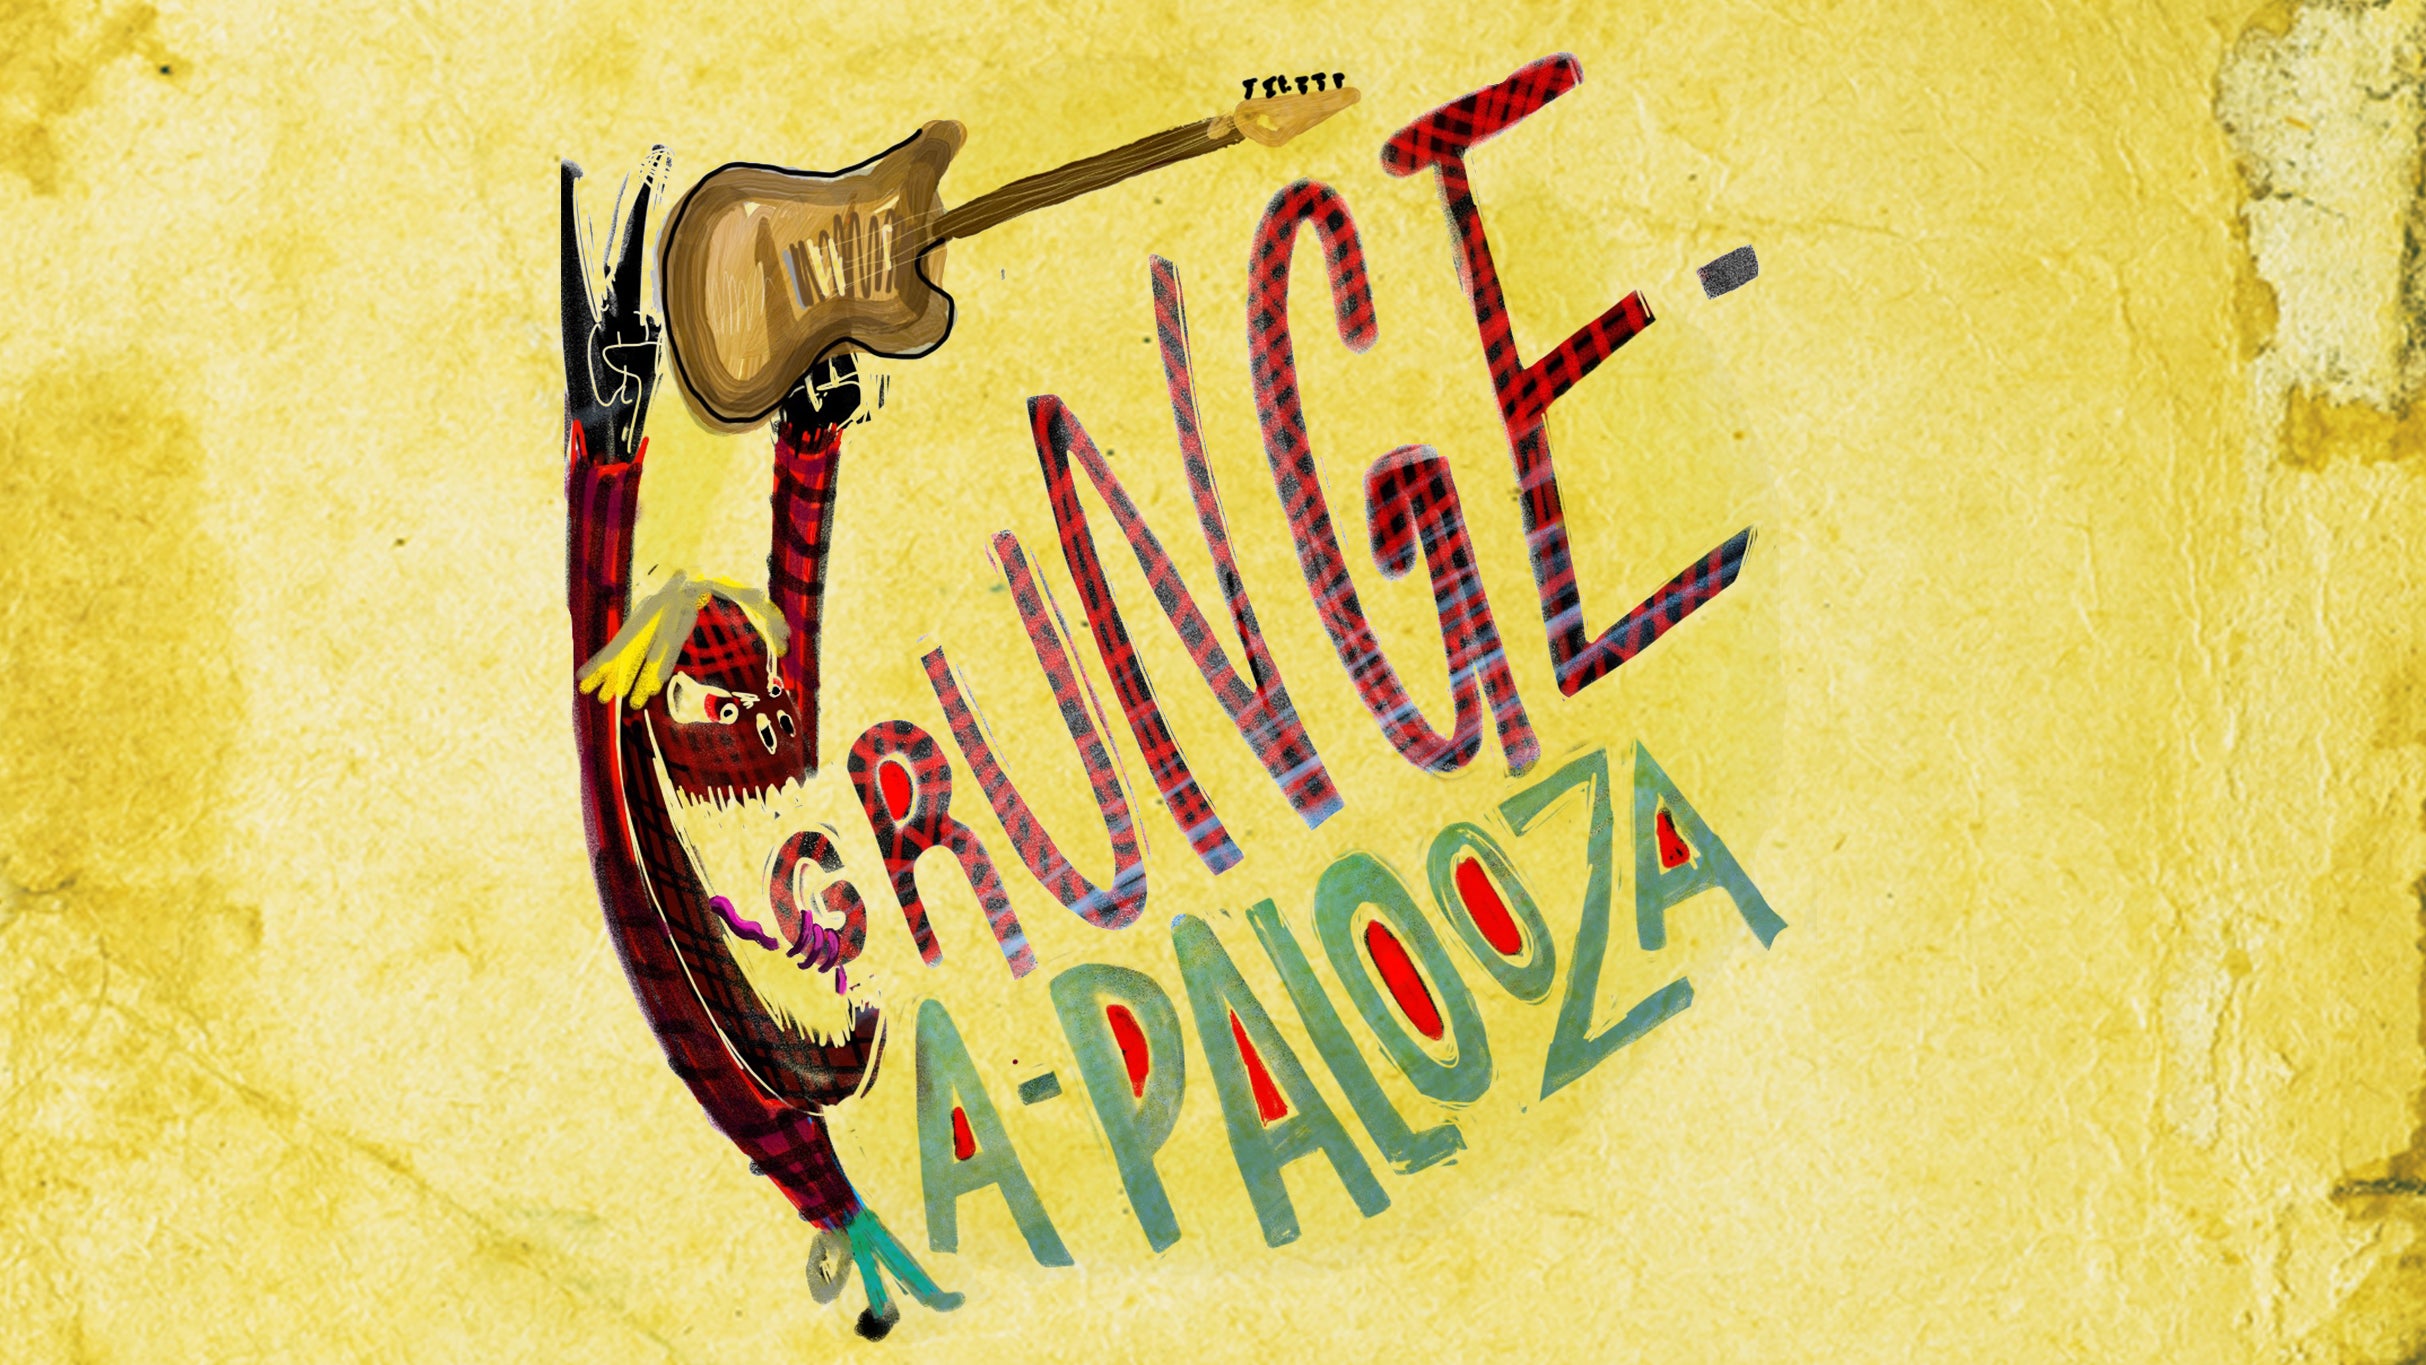 Grunge-A-Palooza at Music Farm